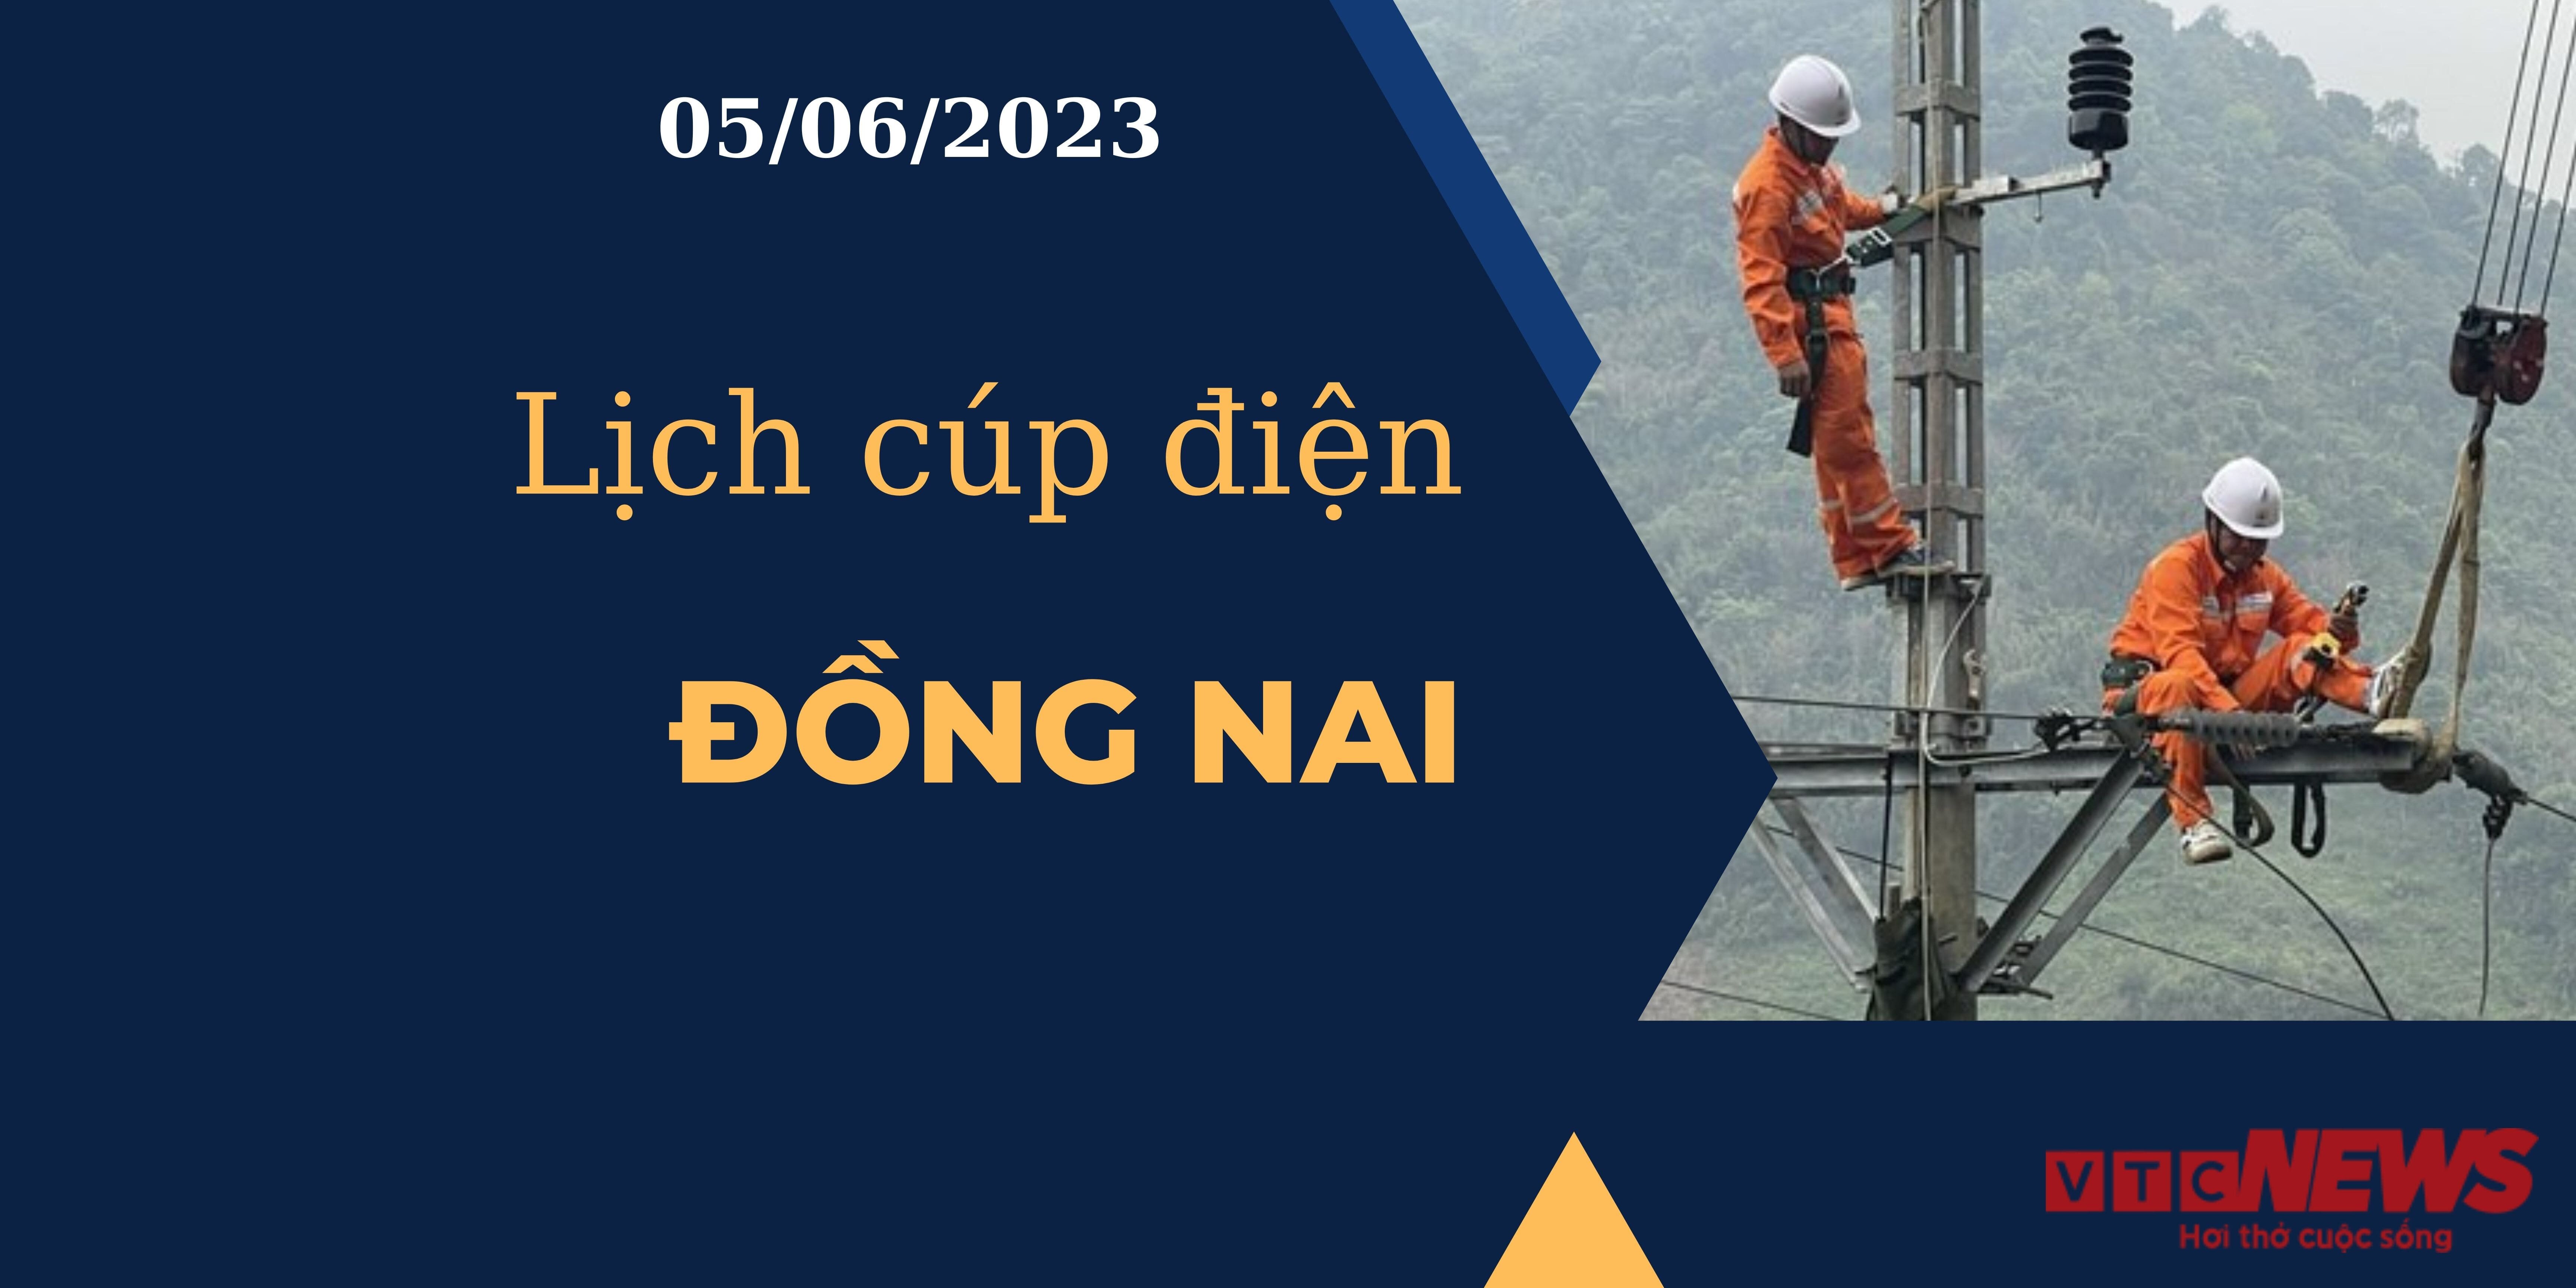 Lịch cúp điện hôm nay ngày 05/06/2023 tại Đồng Nai - 1